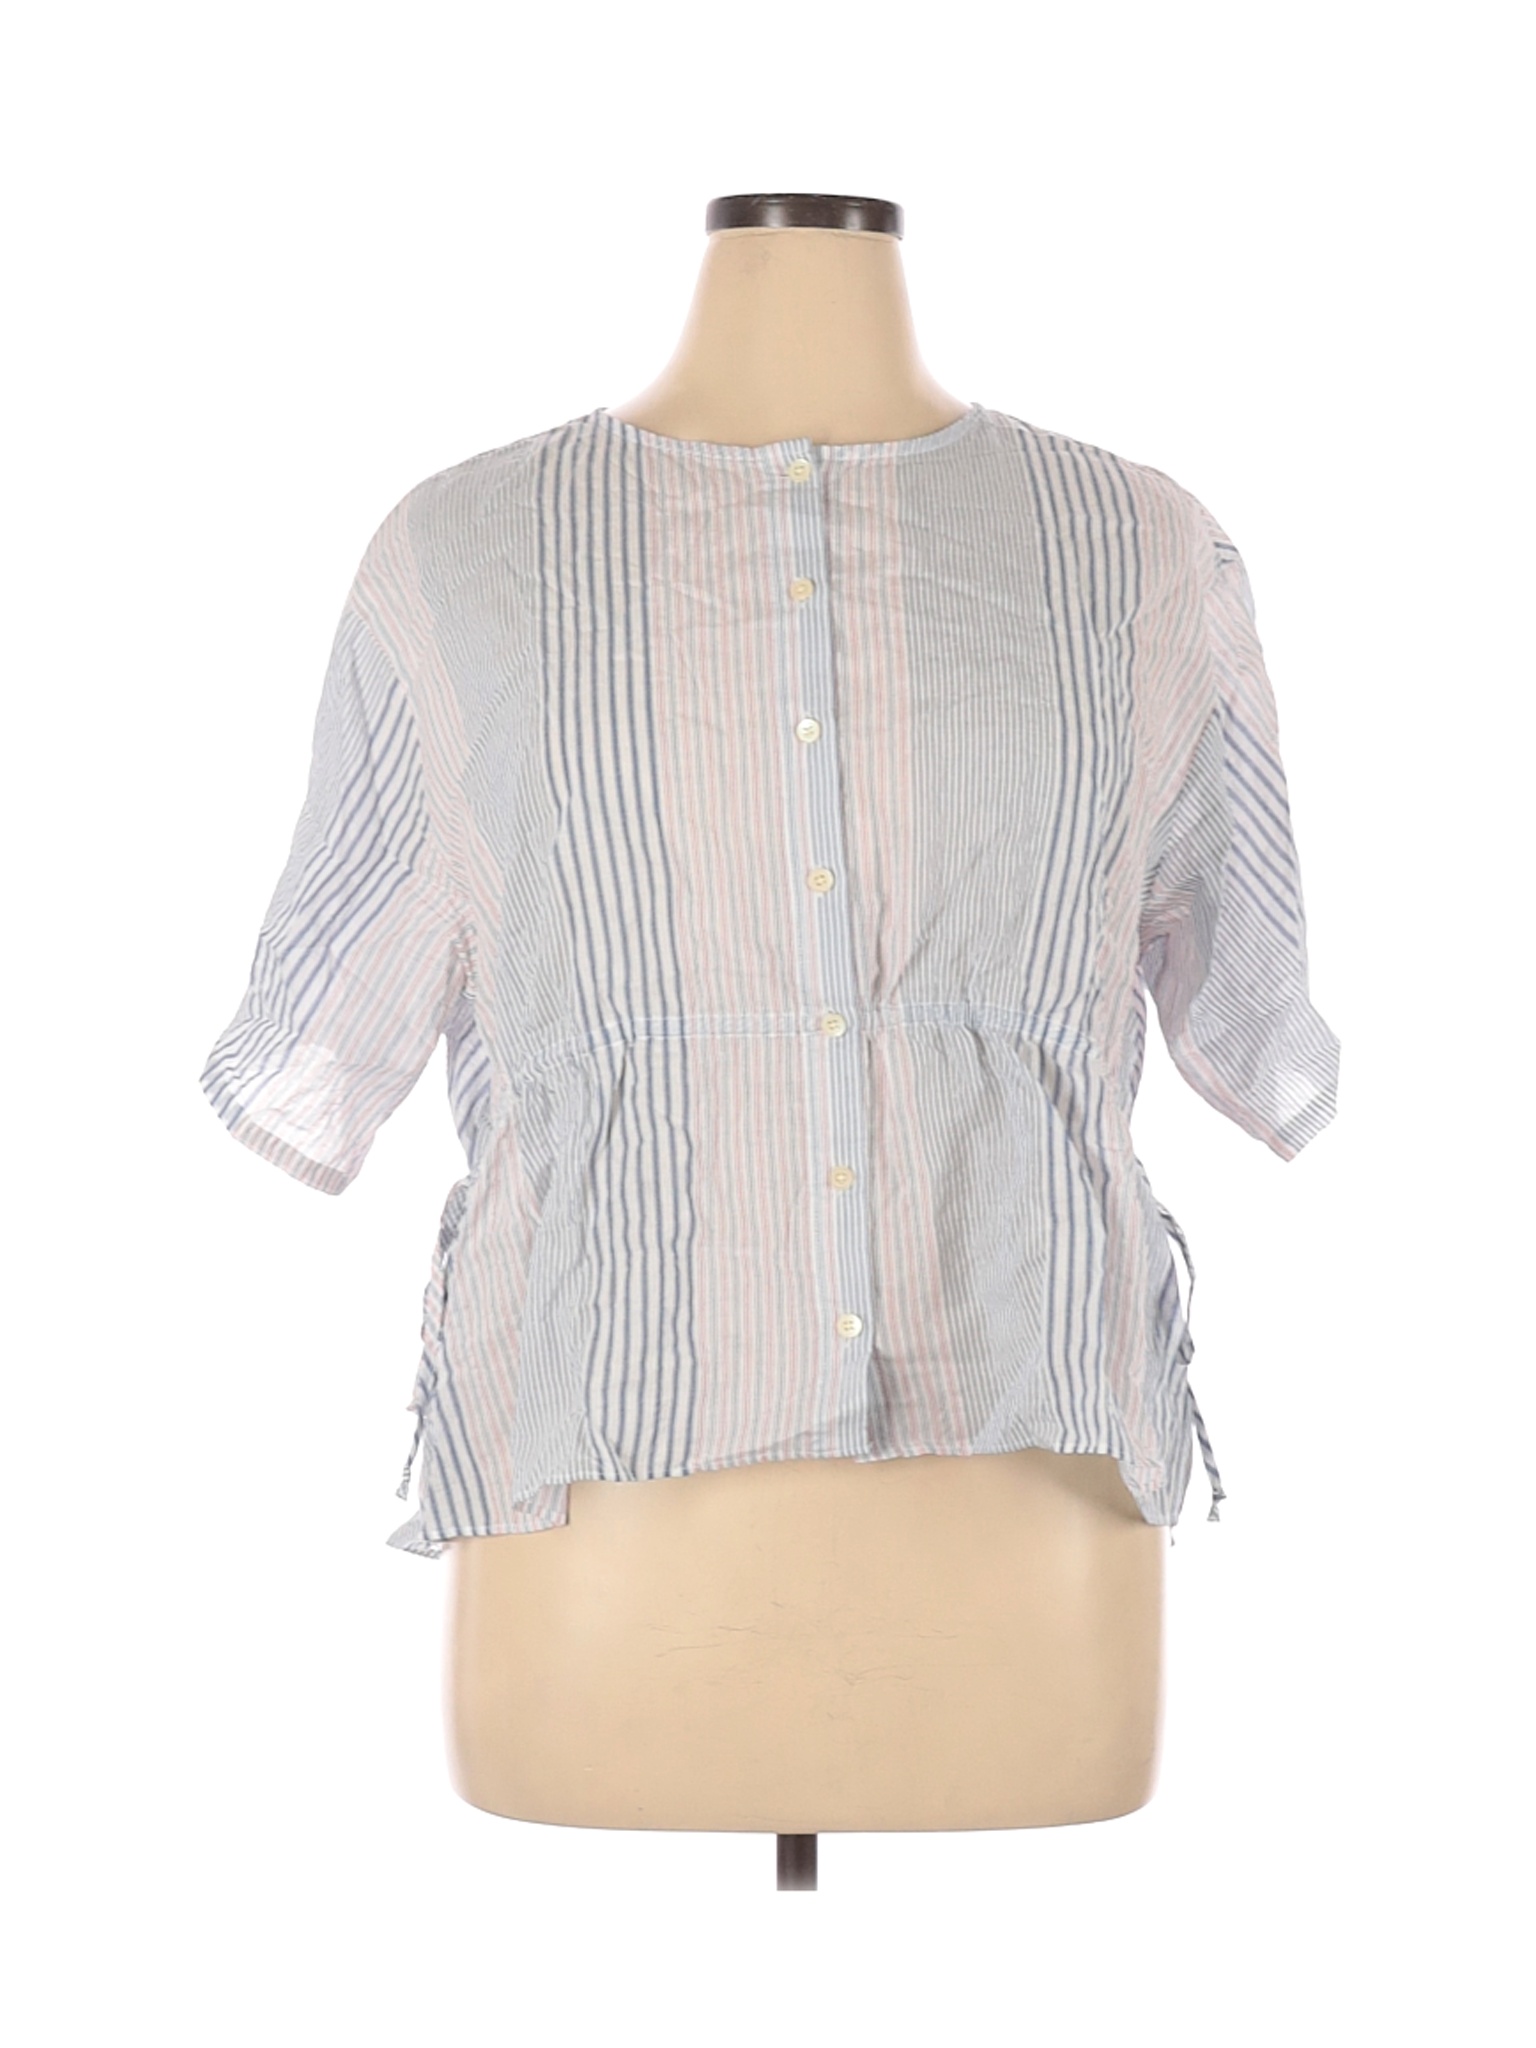 Madewell Women White Short Sleeve Blouse XL | eBay